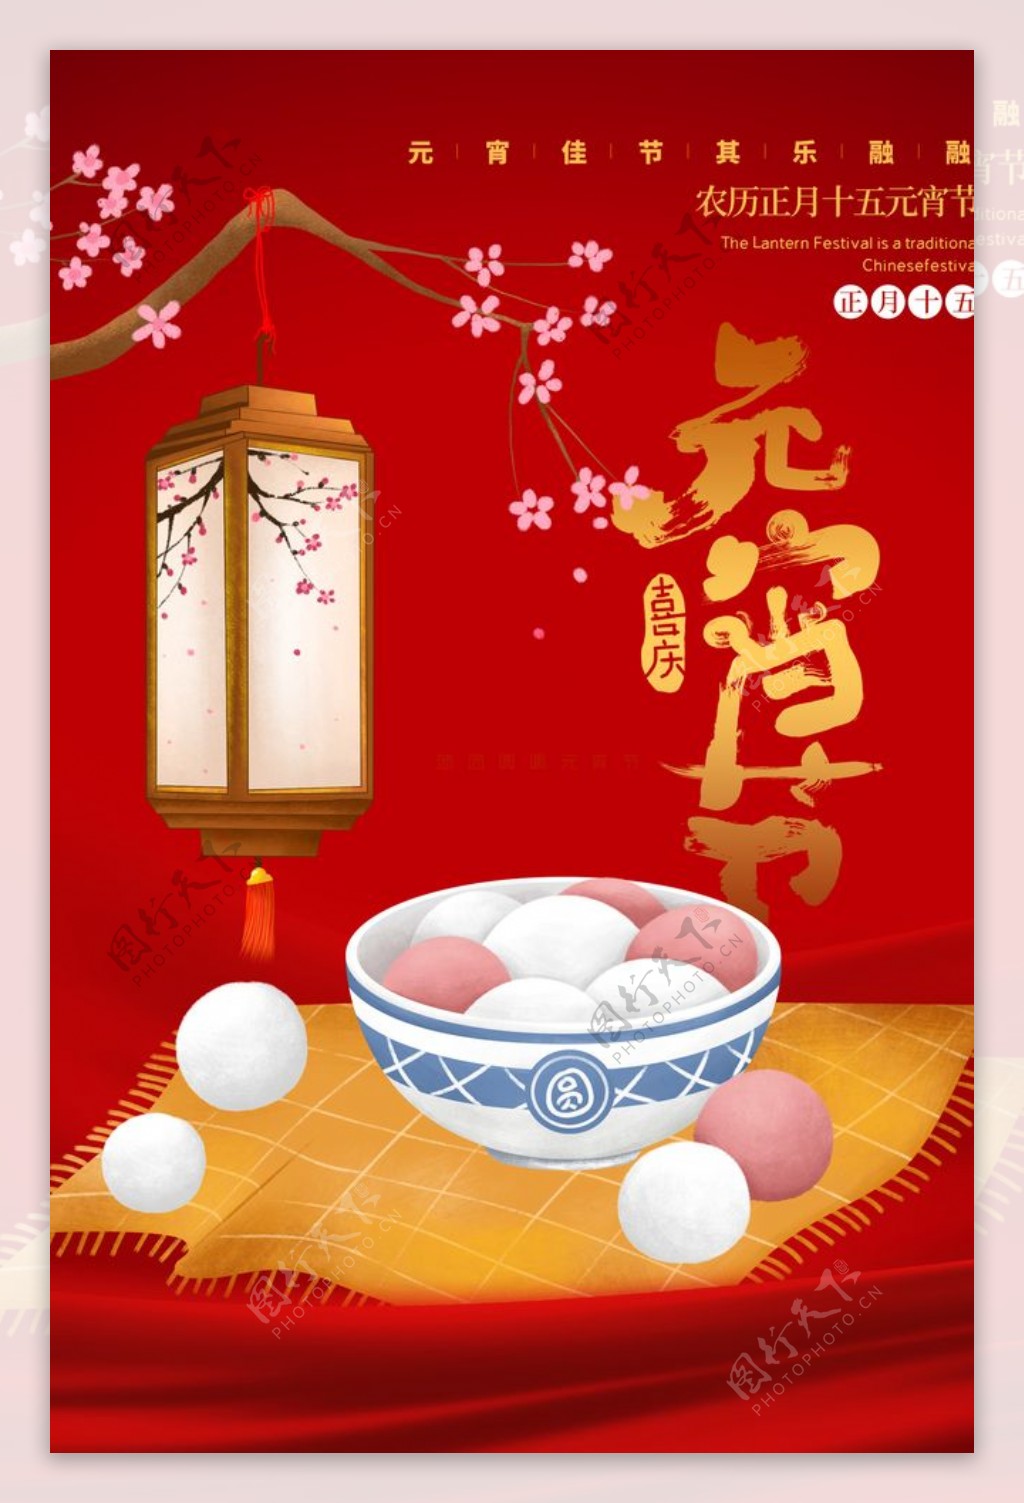 元宵节传统节日宣传活动海报素材